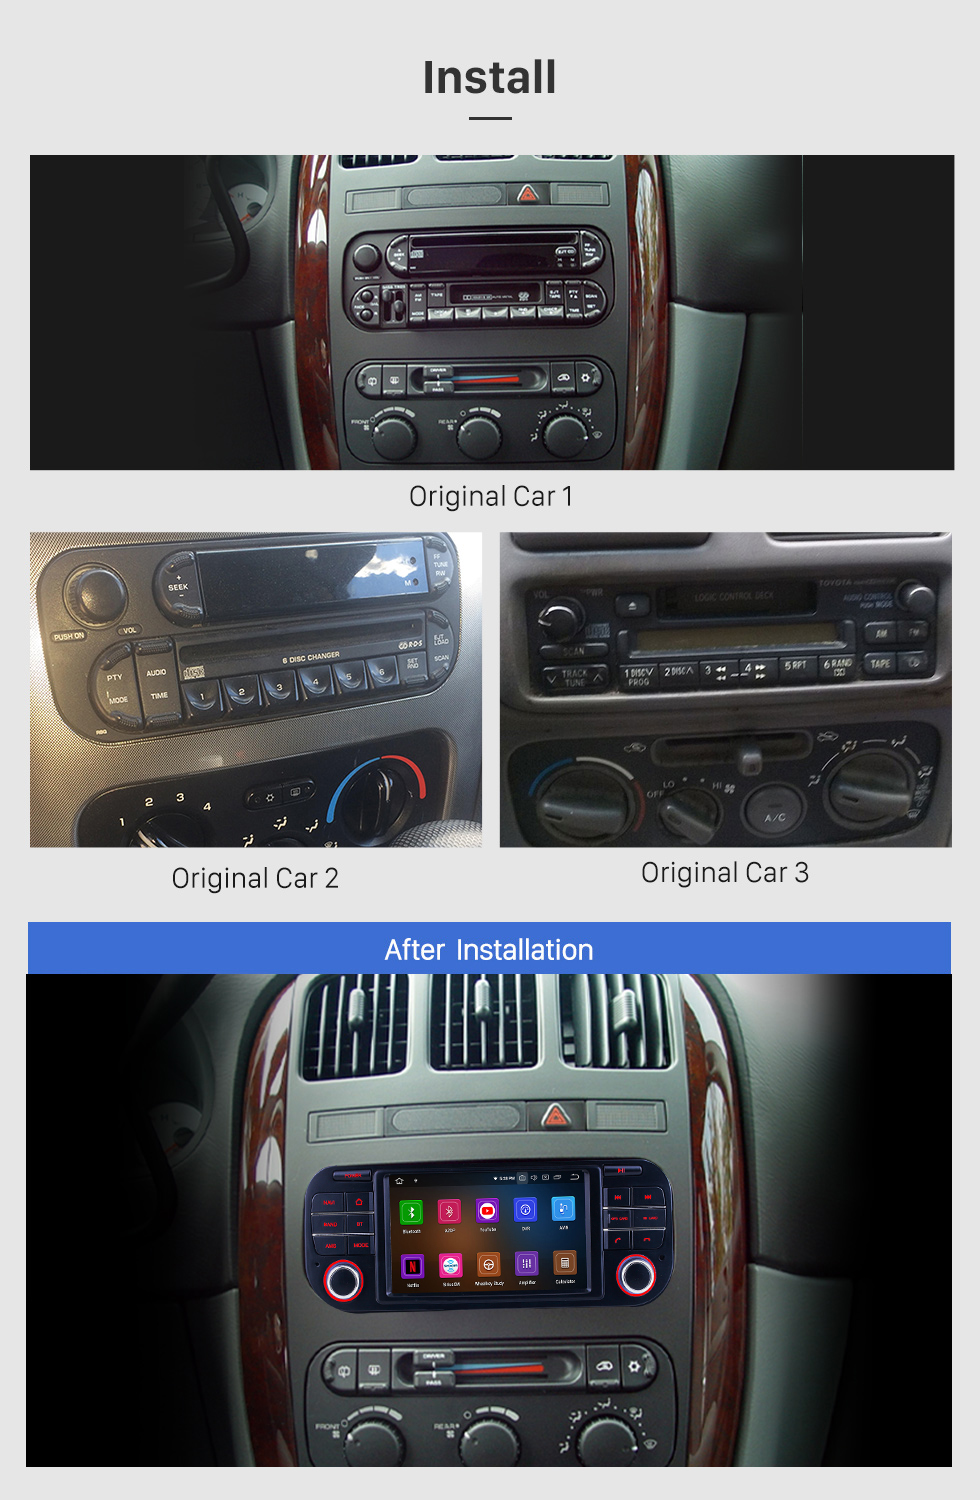 Seicane Mercado de accesorios Reproductor DVD Radio sistema de navegación GPS para 2002-2007 Chrysler 300 Limited Touring 300C 300M con Pantalla táctil TPMS DVR OBD Vínculo espejo Bluetooth 3G WiFi TV Vídeo Cámara de vista trasera